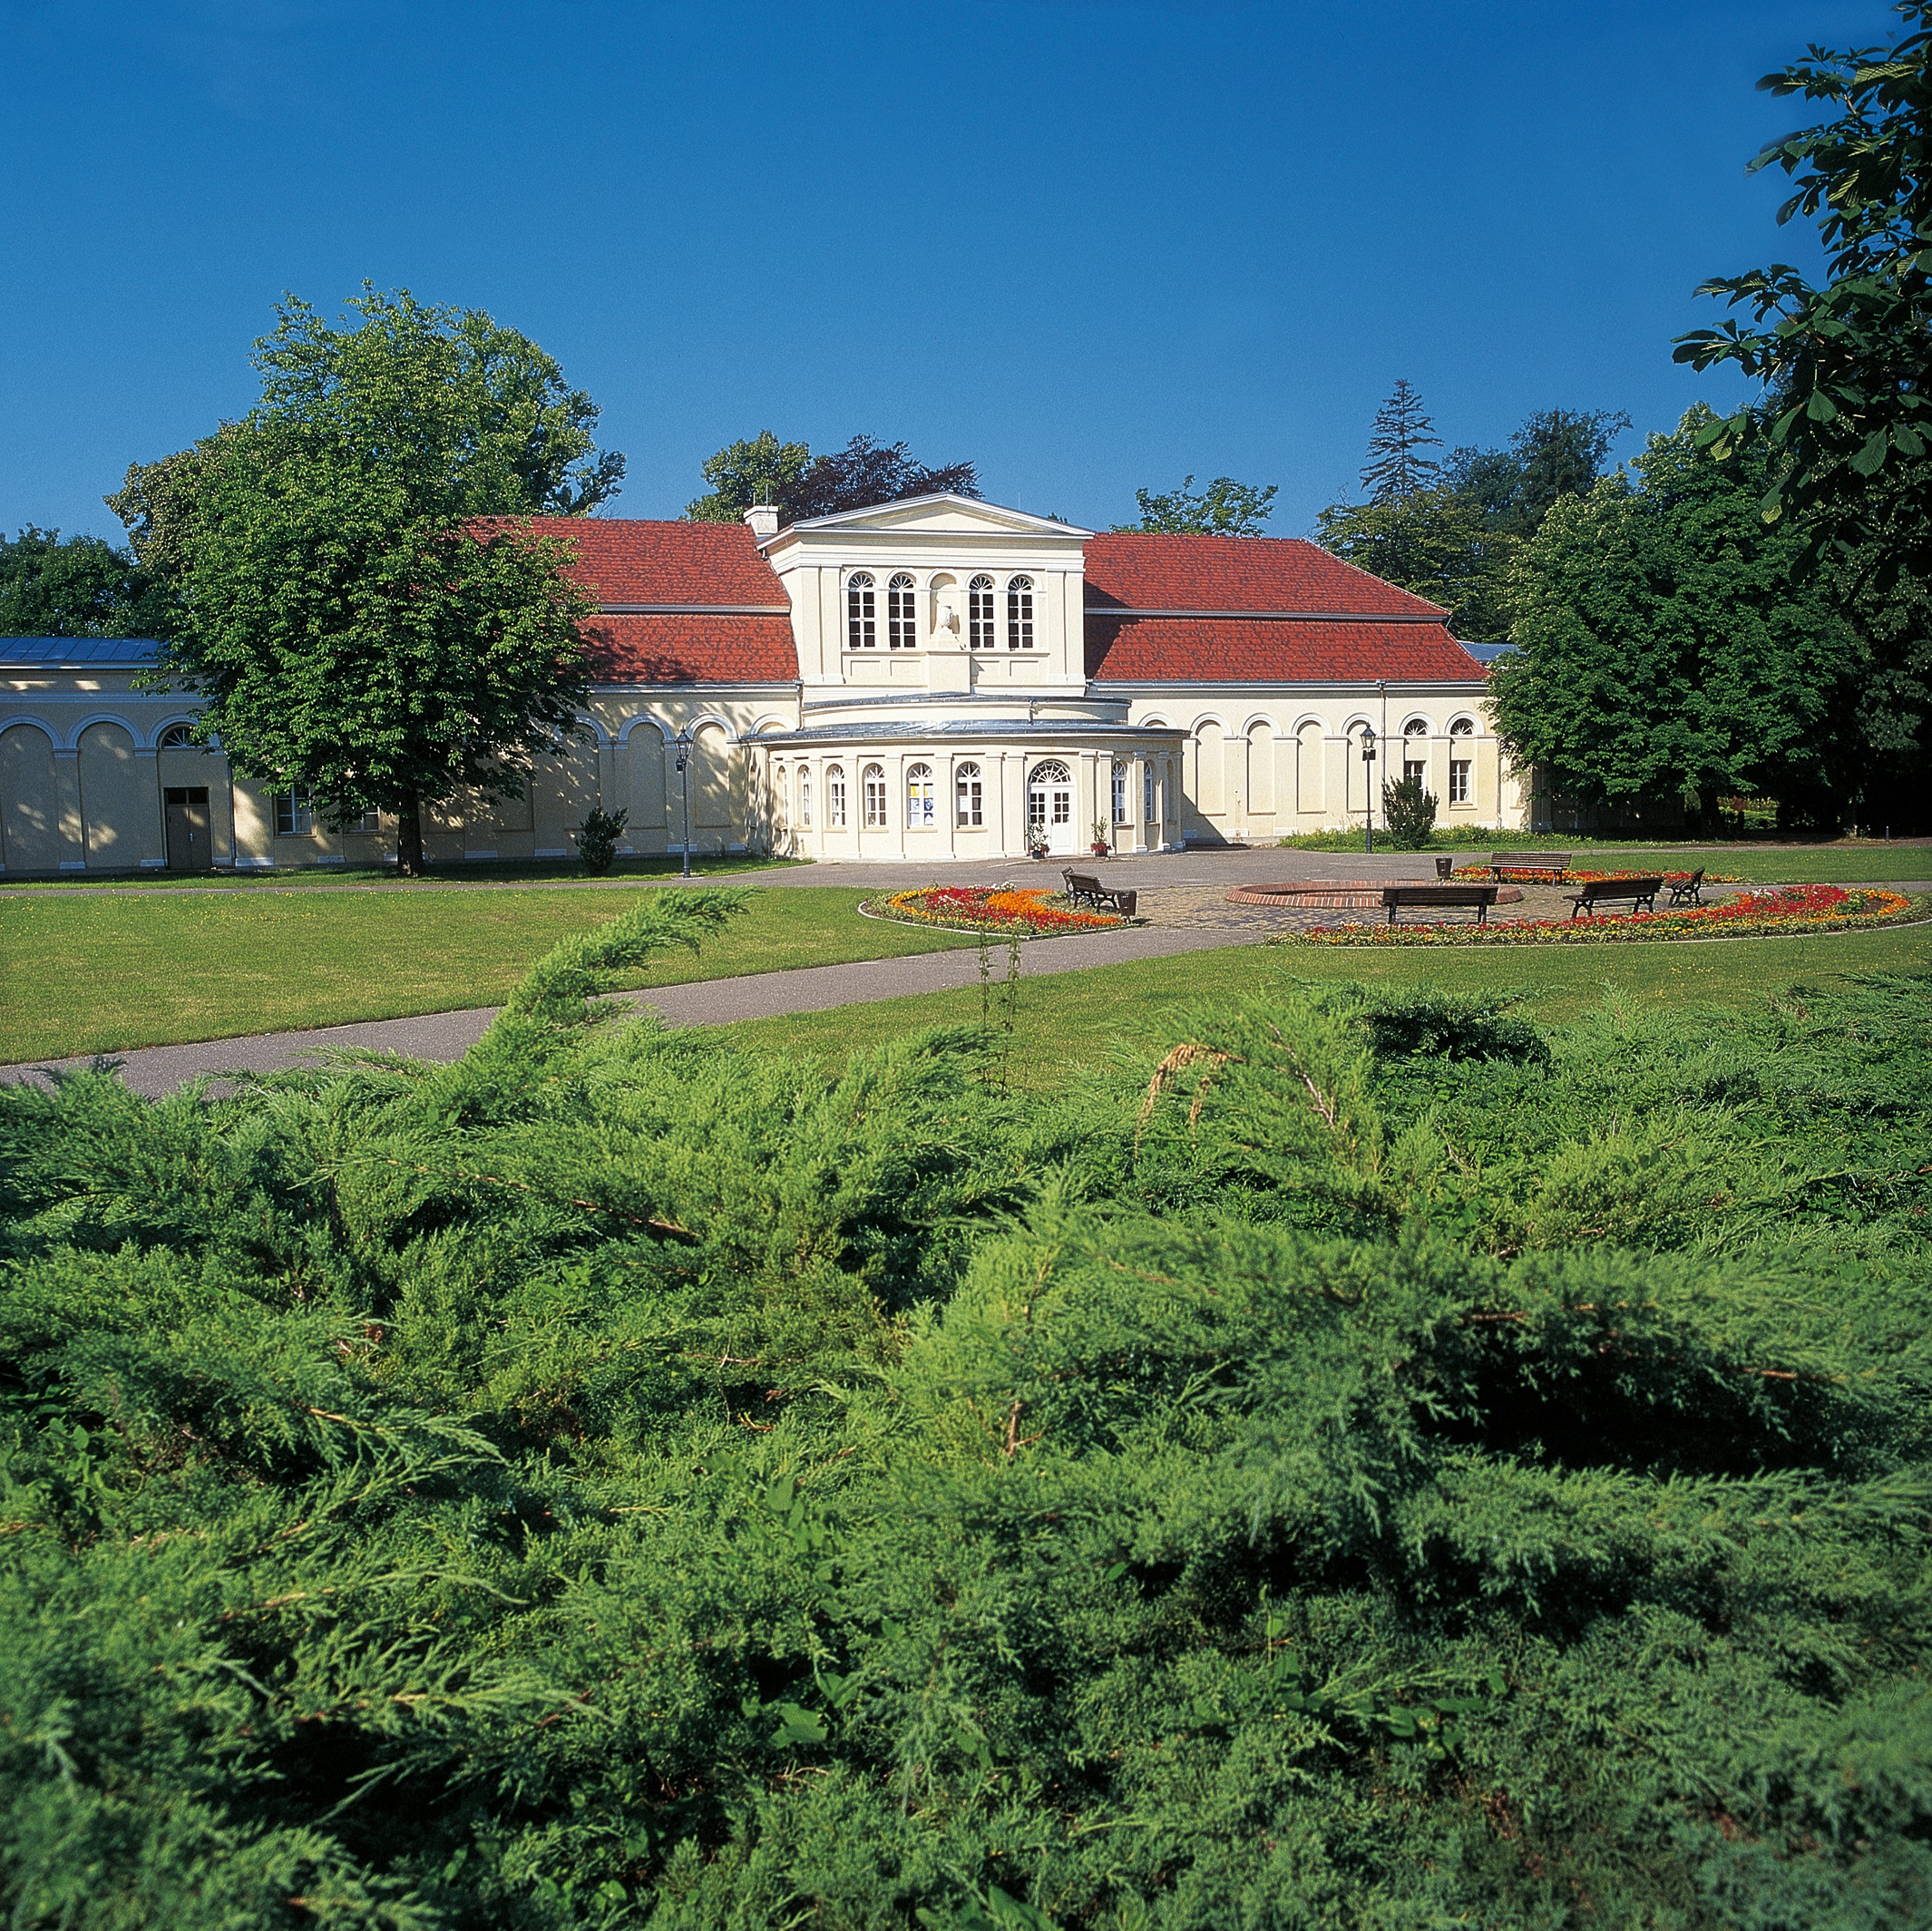 Außenansicht der Orangerie im Schlosspark Neustrelitz.
